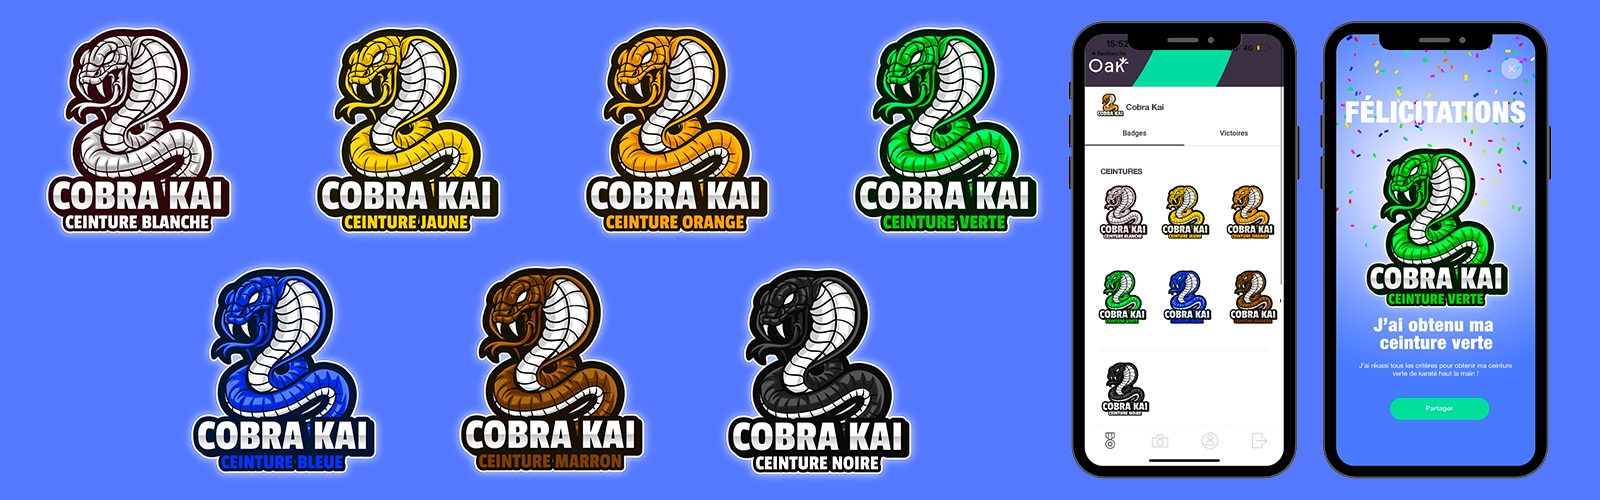 Diapo_Cobra_Kai